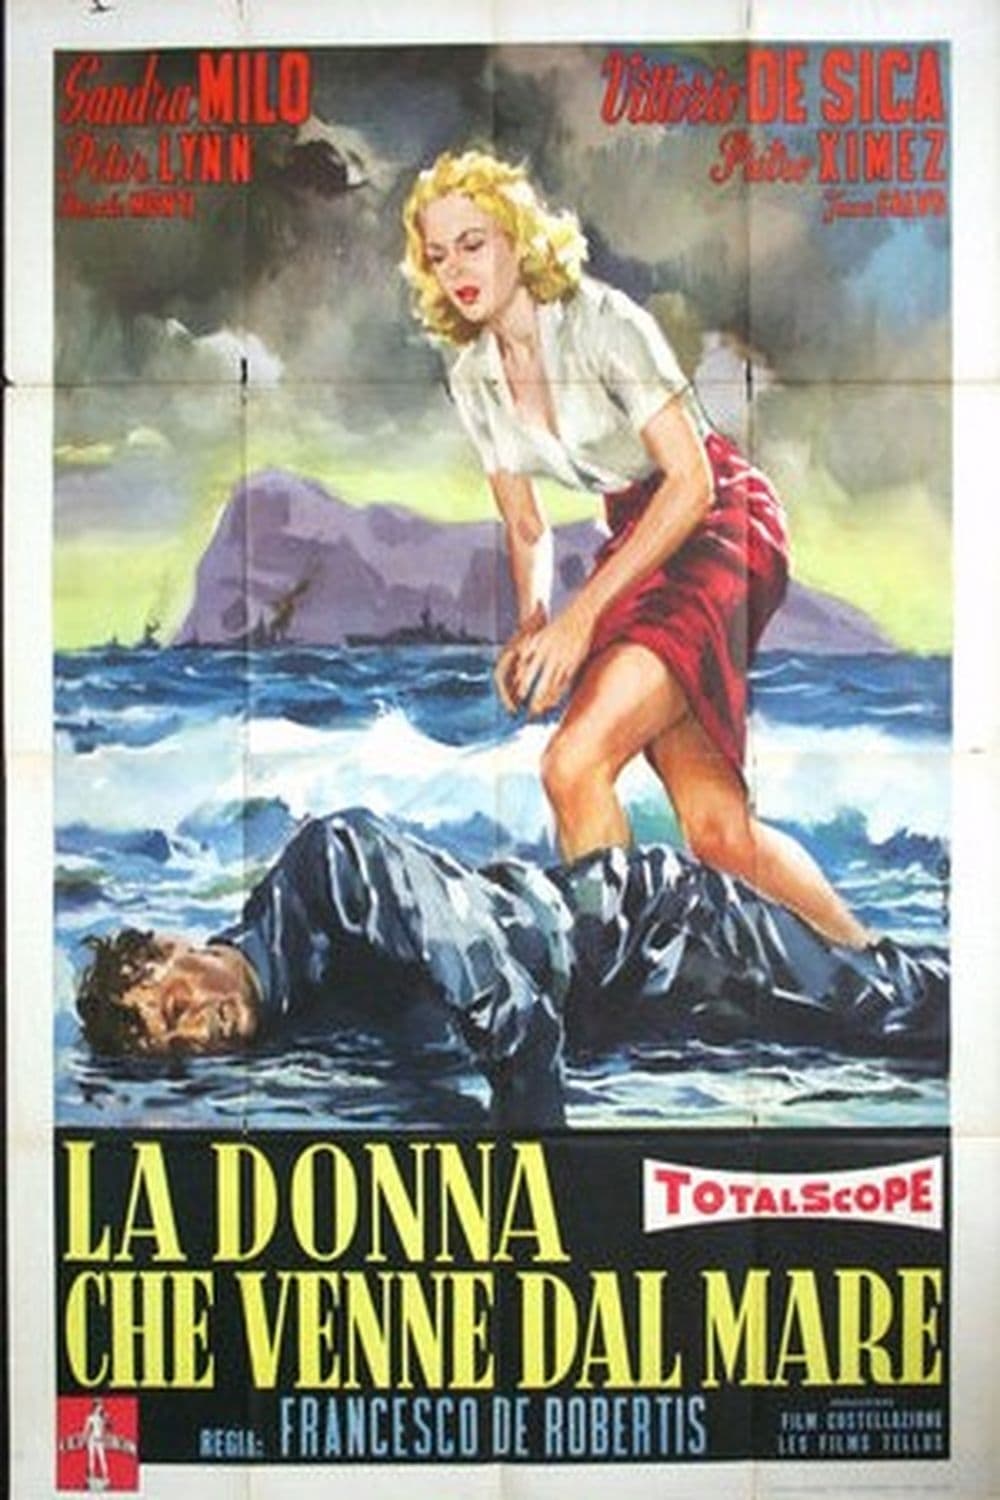 La donna che venne dal mare (1957)